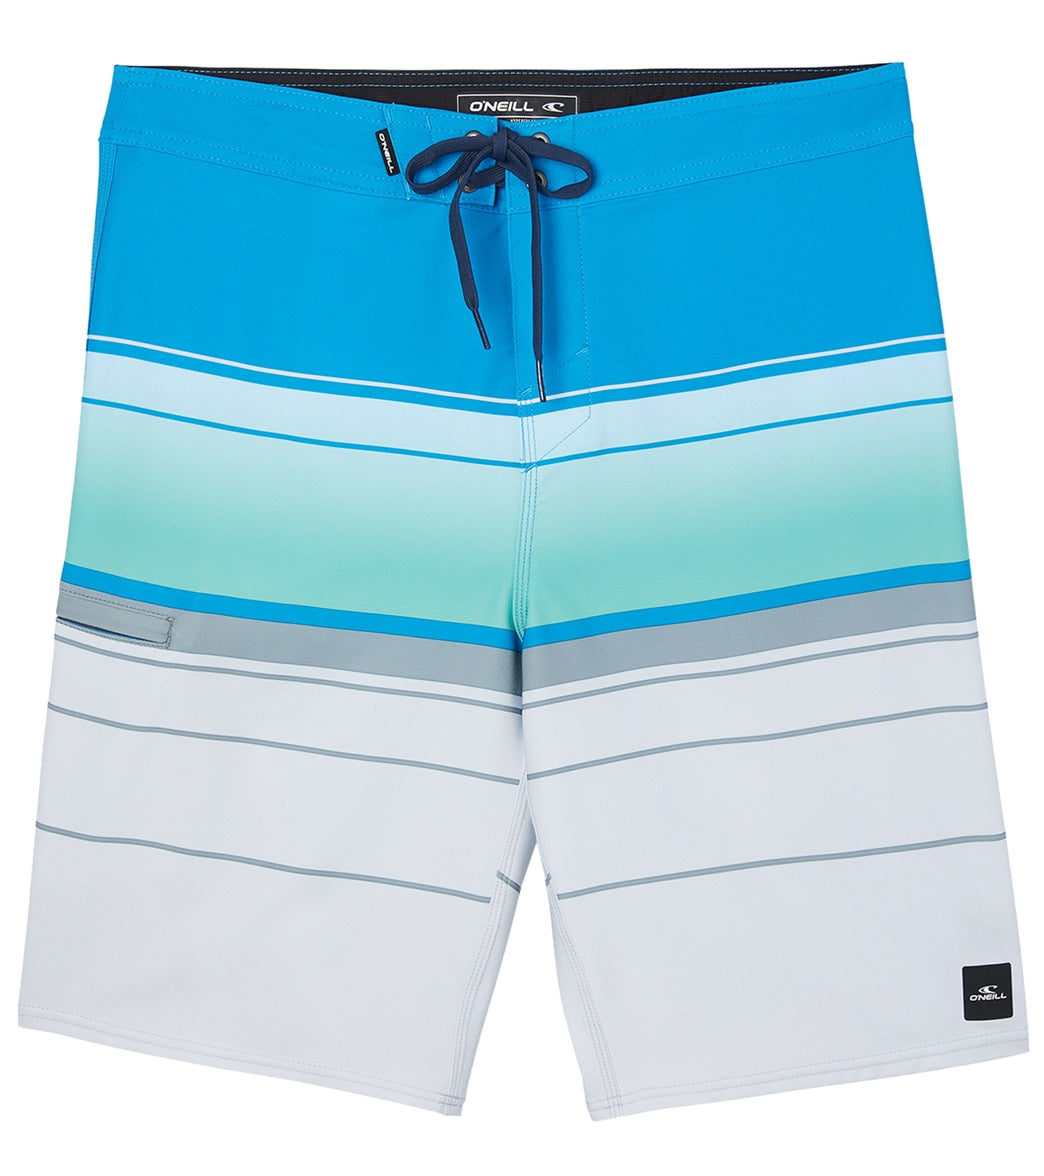 ONeill Mens 21 Hyperfreak Heat Stripe Board Shorts